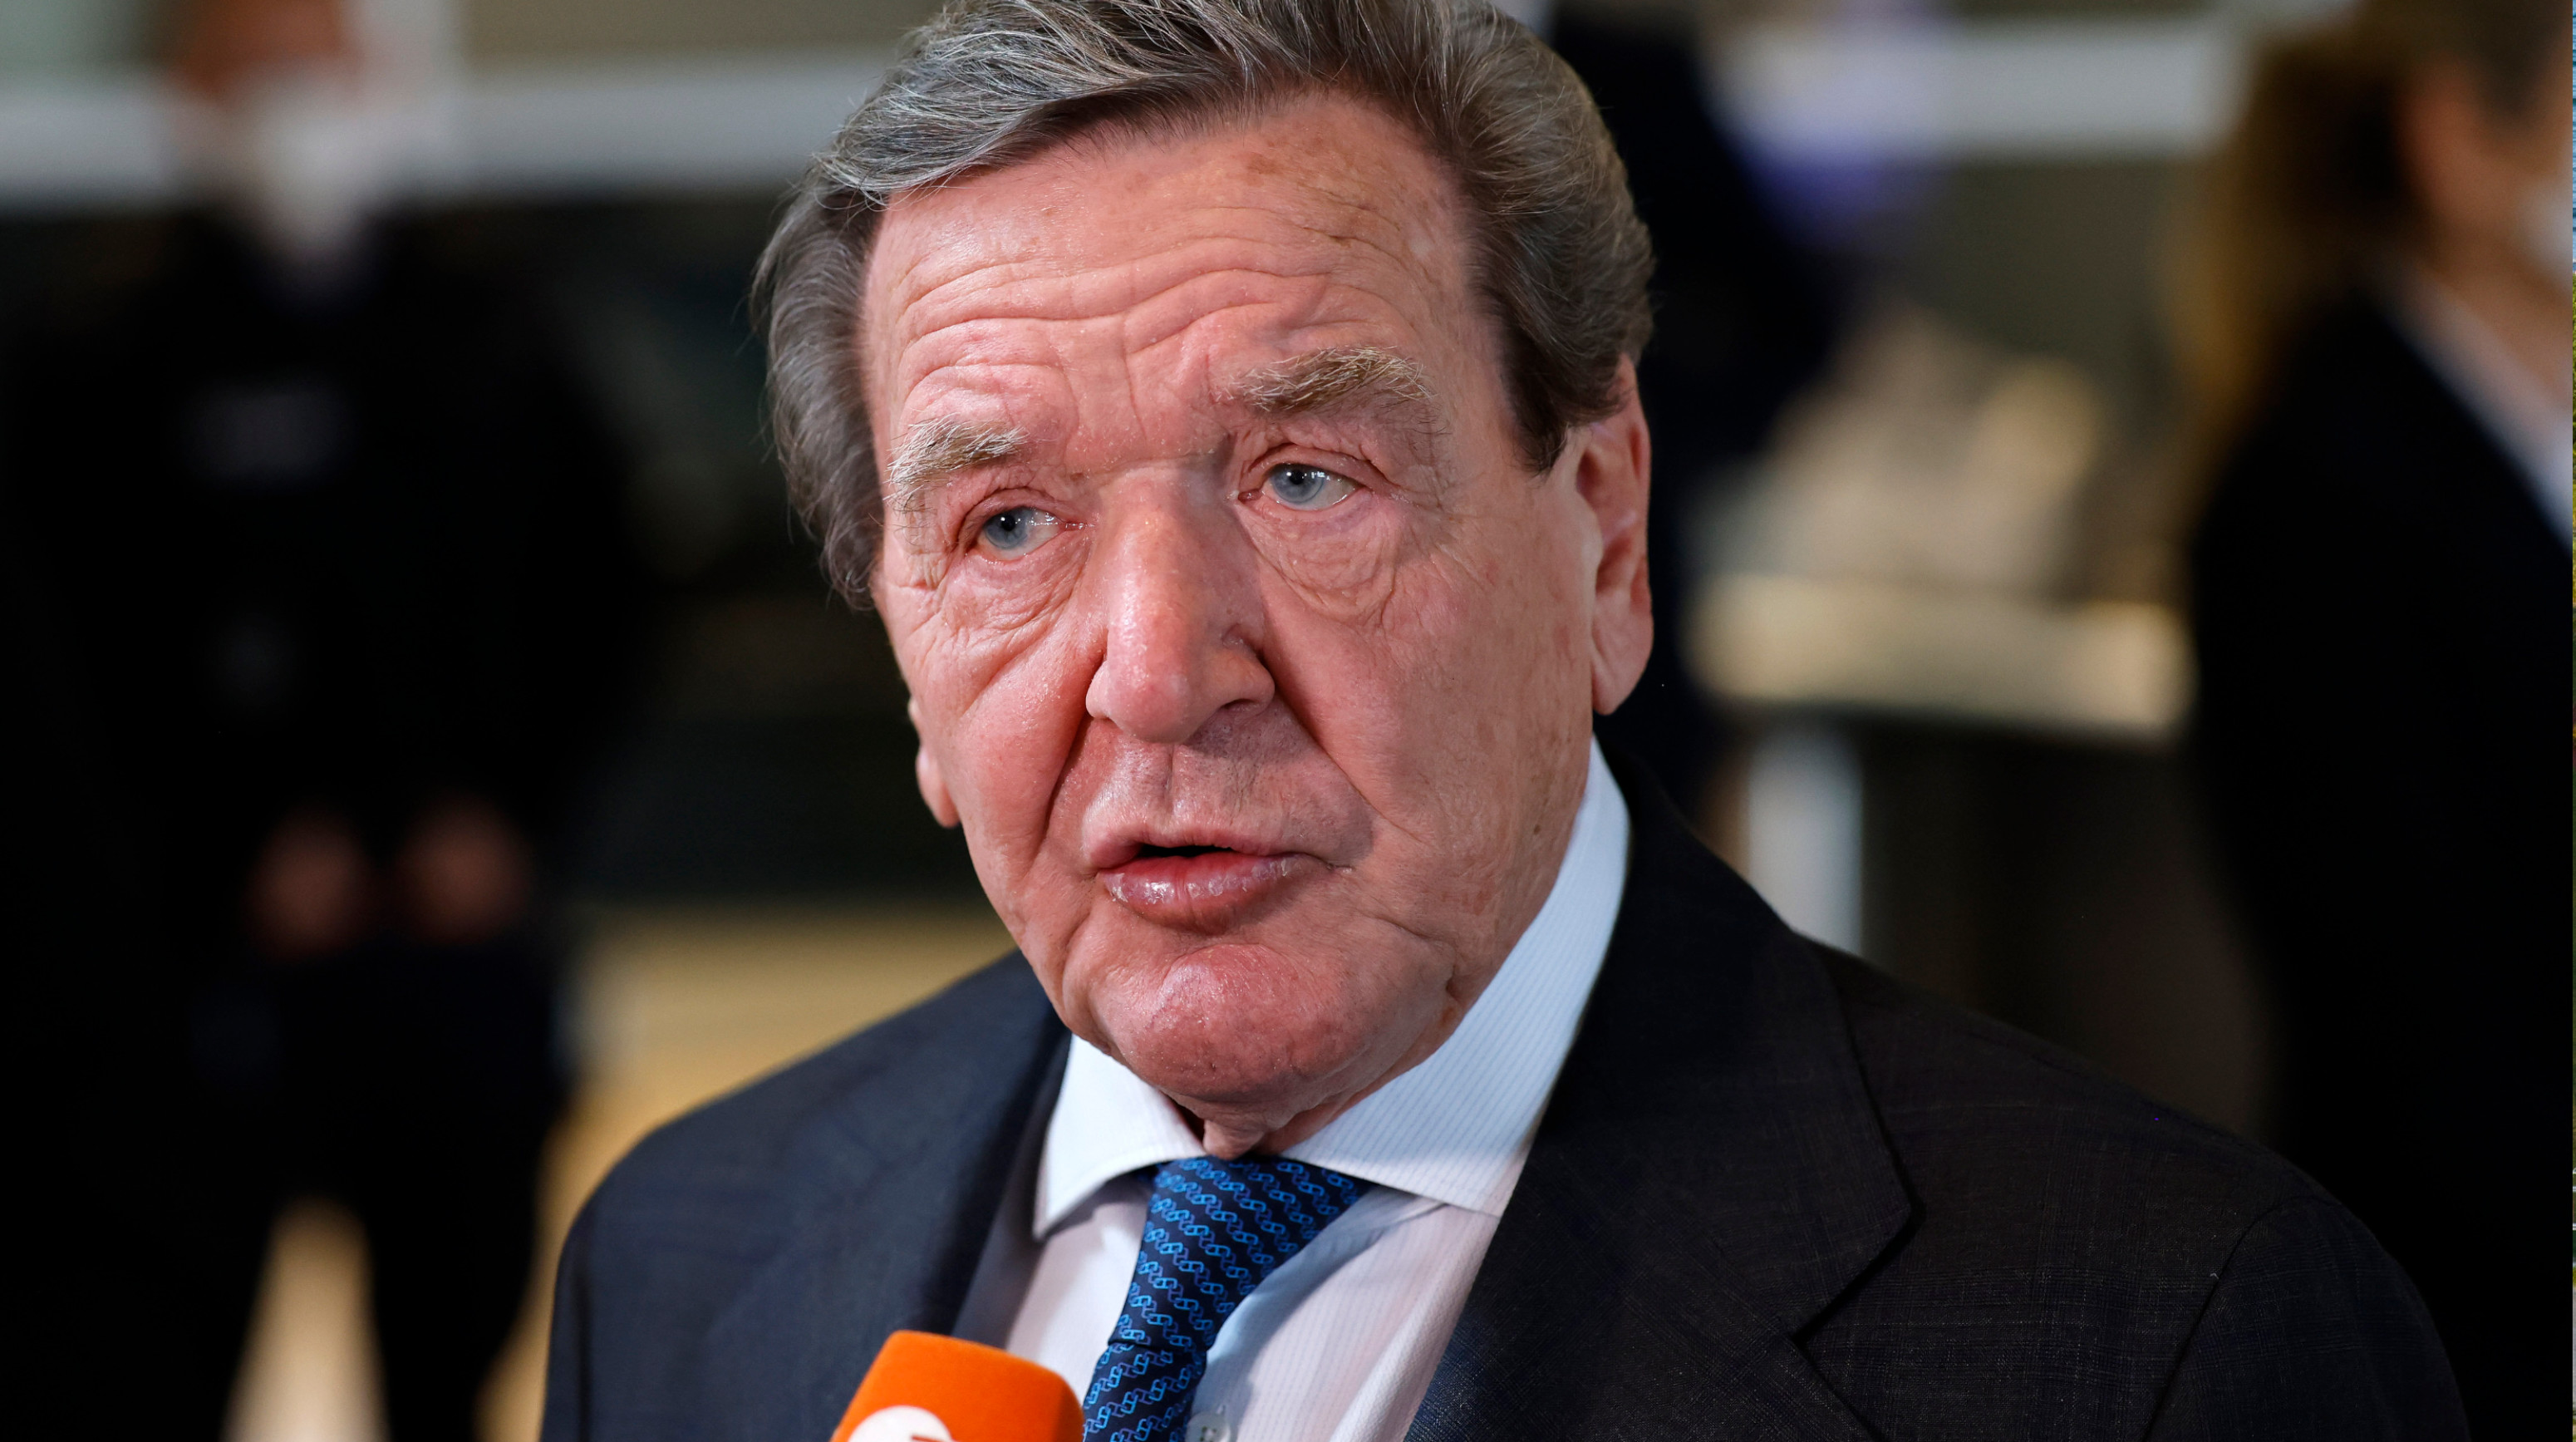 Büro- und Personalausstattung für Altkanzler vor Gericht: Schröders Klage ist aussichtslos